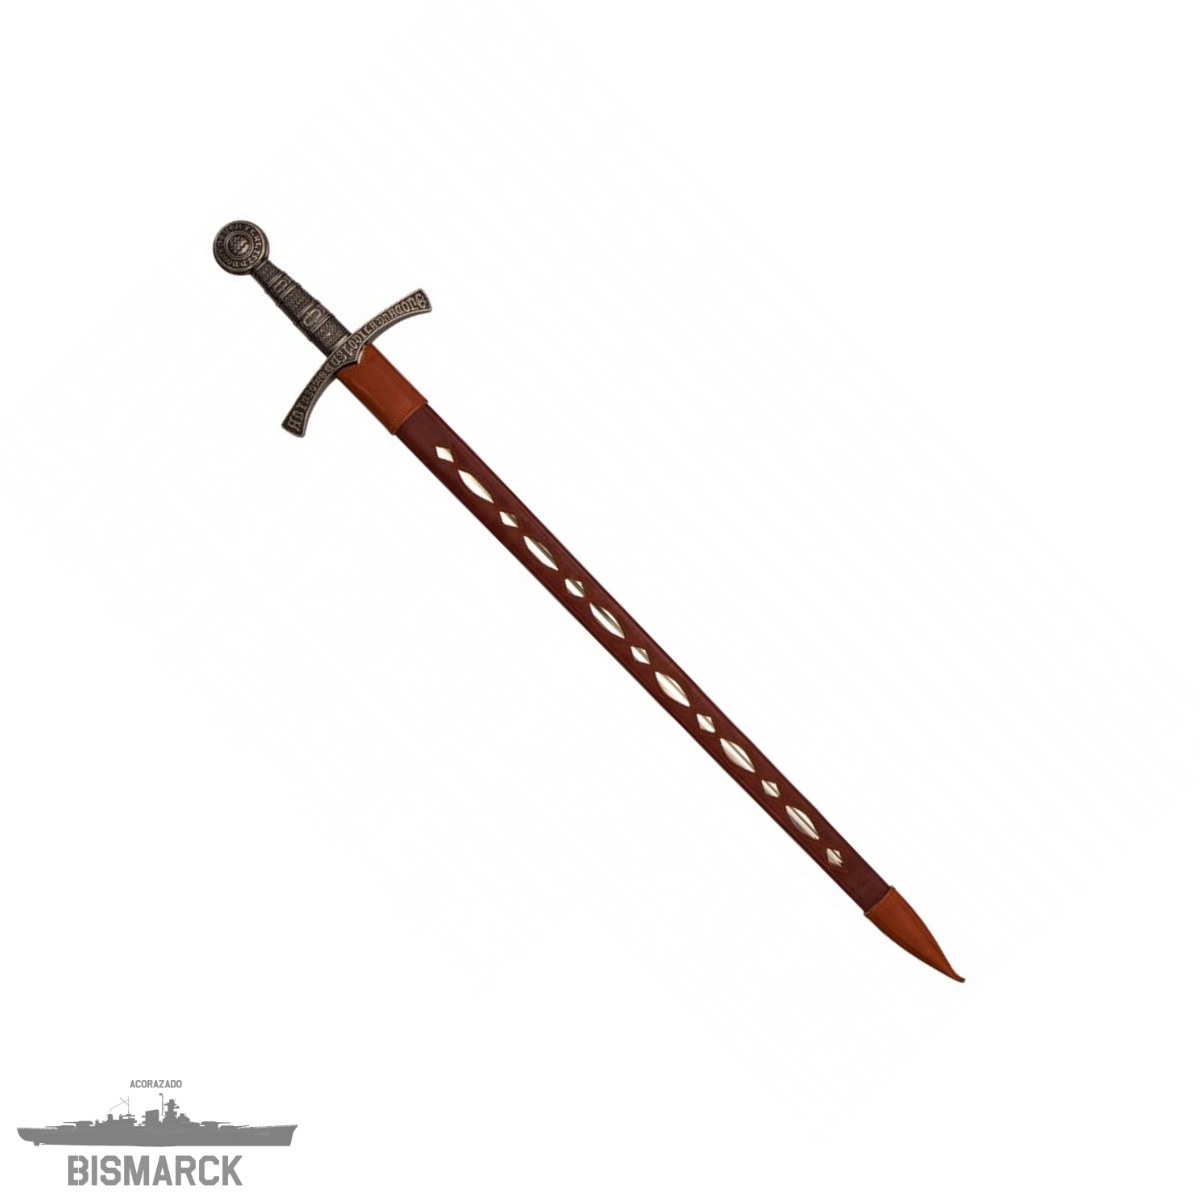 Espada medieval de Francia Siglo XIV, reproducción fiel, fabricada de metal  con funda, extraíble, arma decorativa sin filo Baratas, Precios y Ofertas